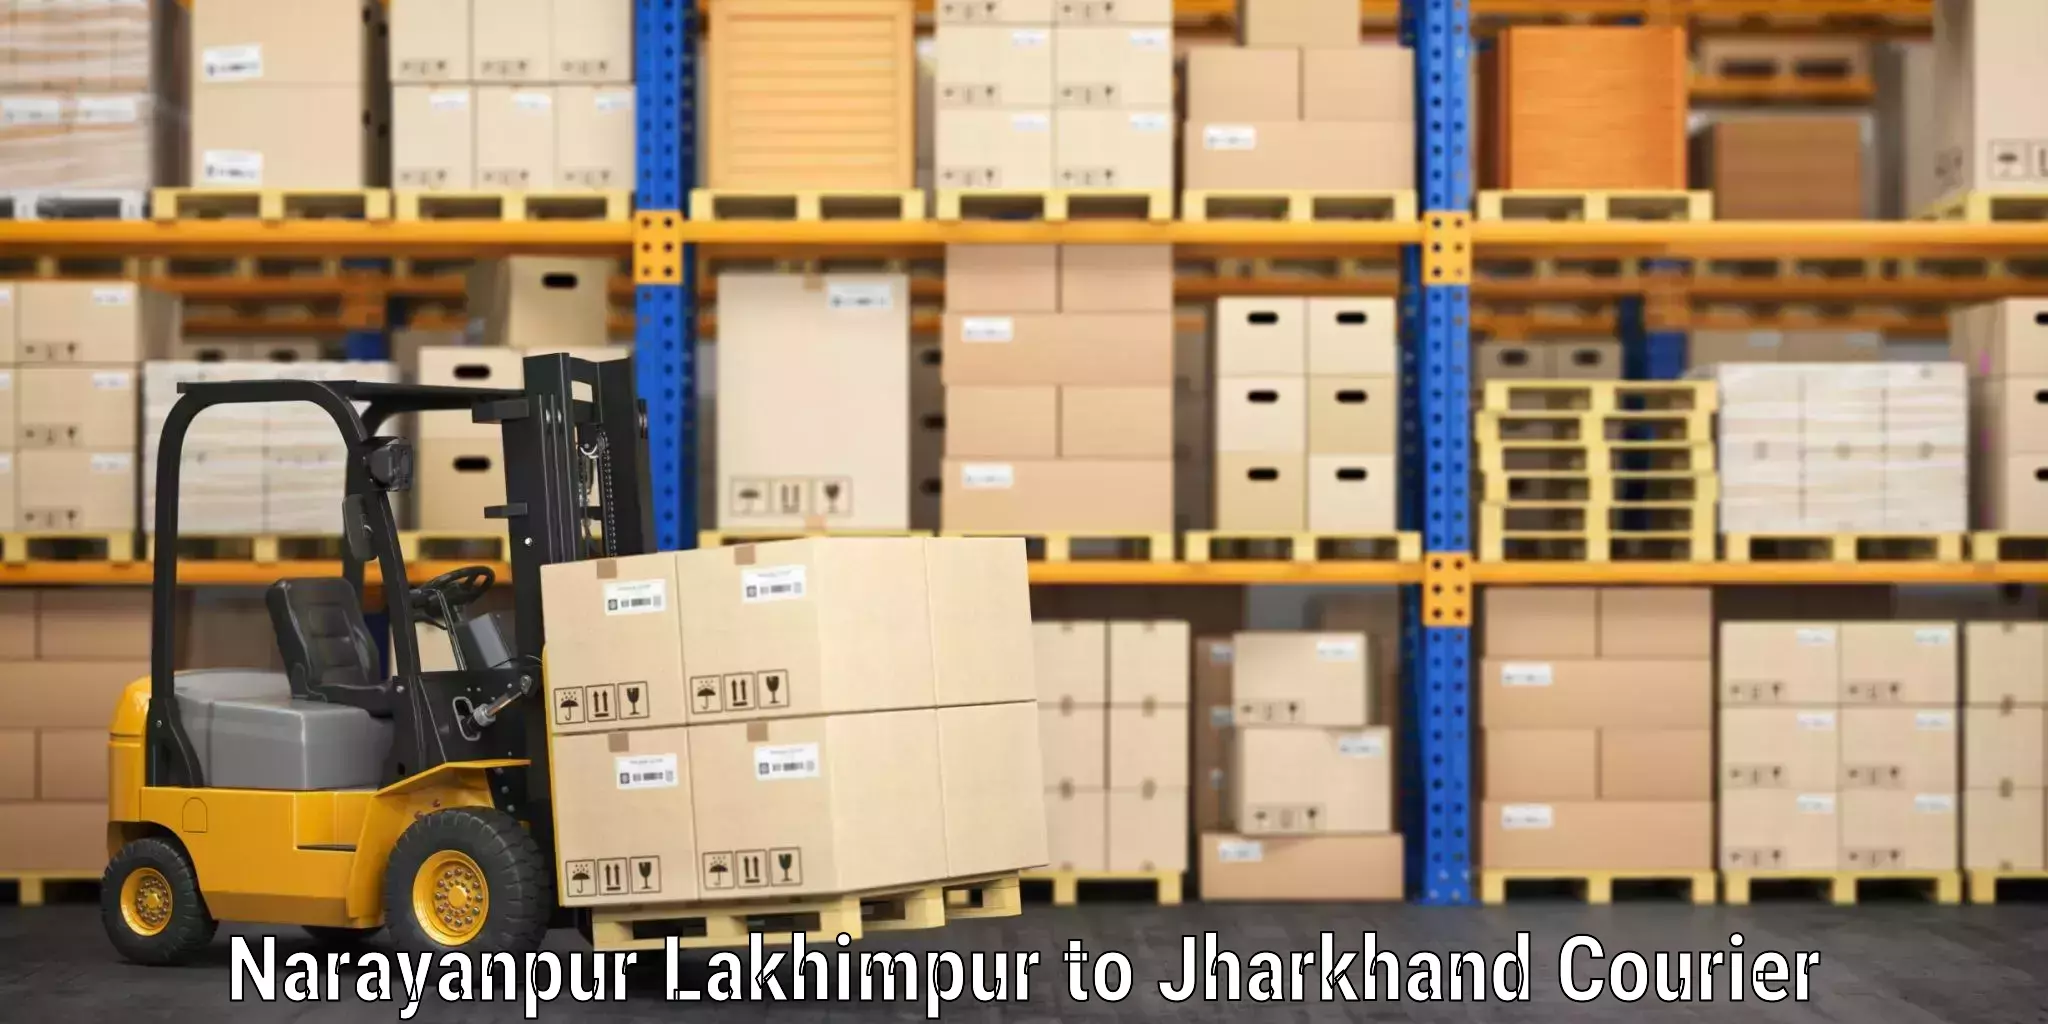 Baggage shipping calculator Narayanpur Lakhimpur to Noamundi